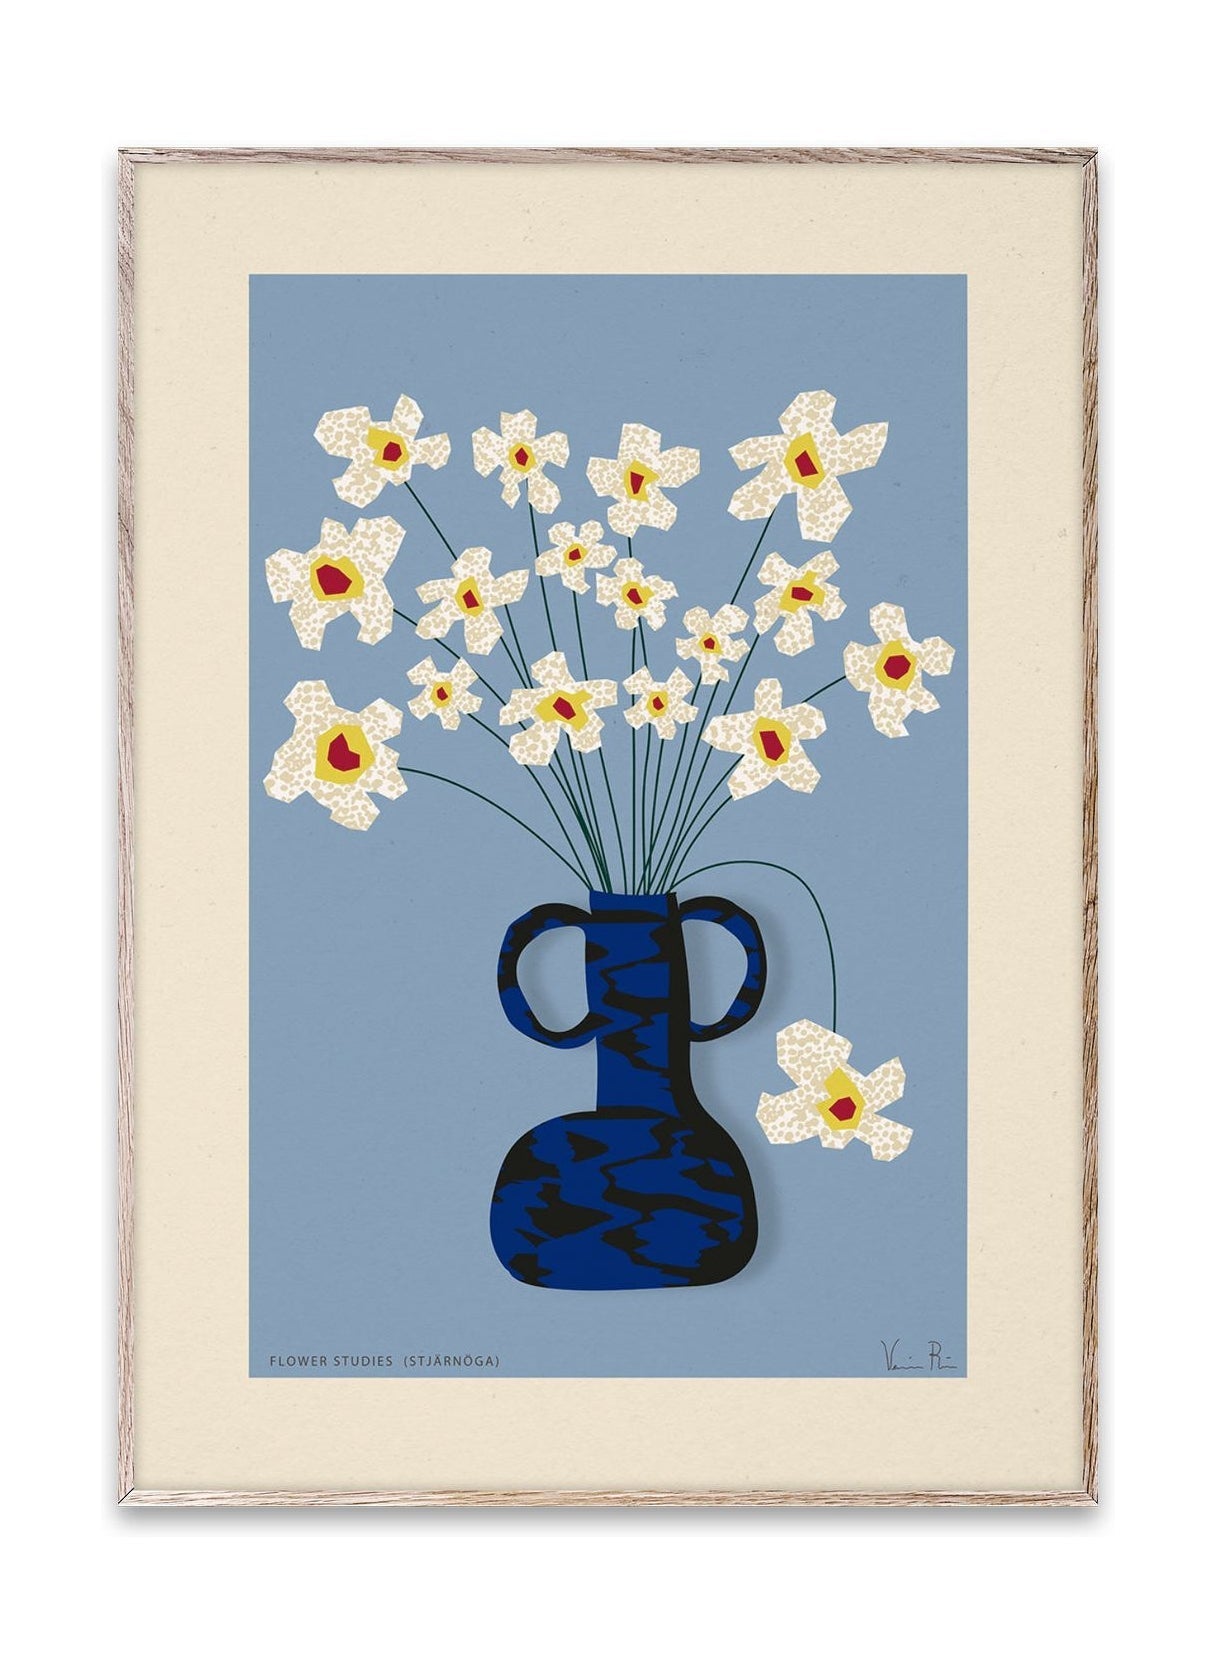 Paper Collective Flower Studies 04 (Stjärnöga) Affiche, 50x70 cm